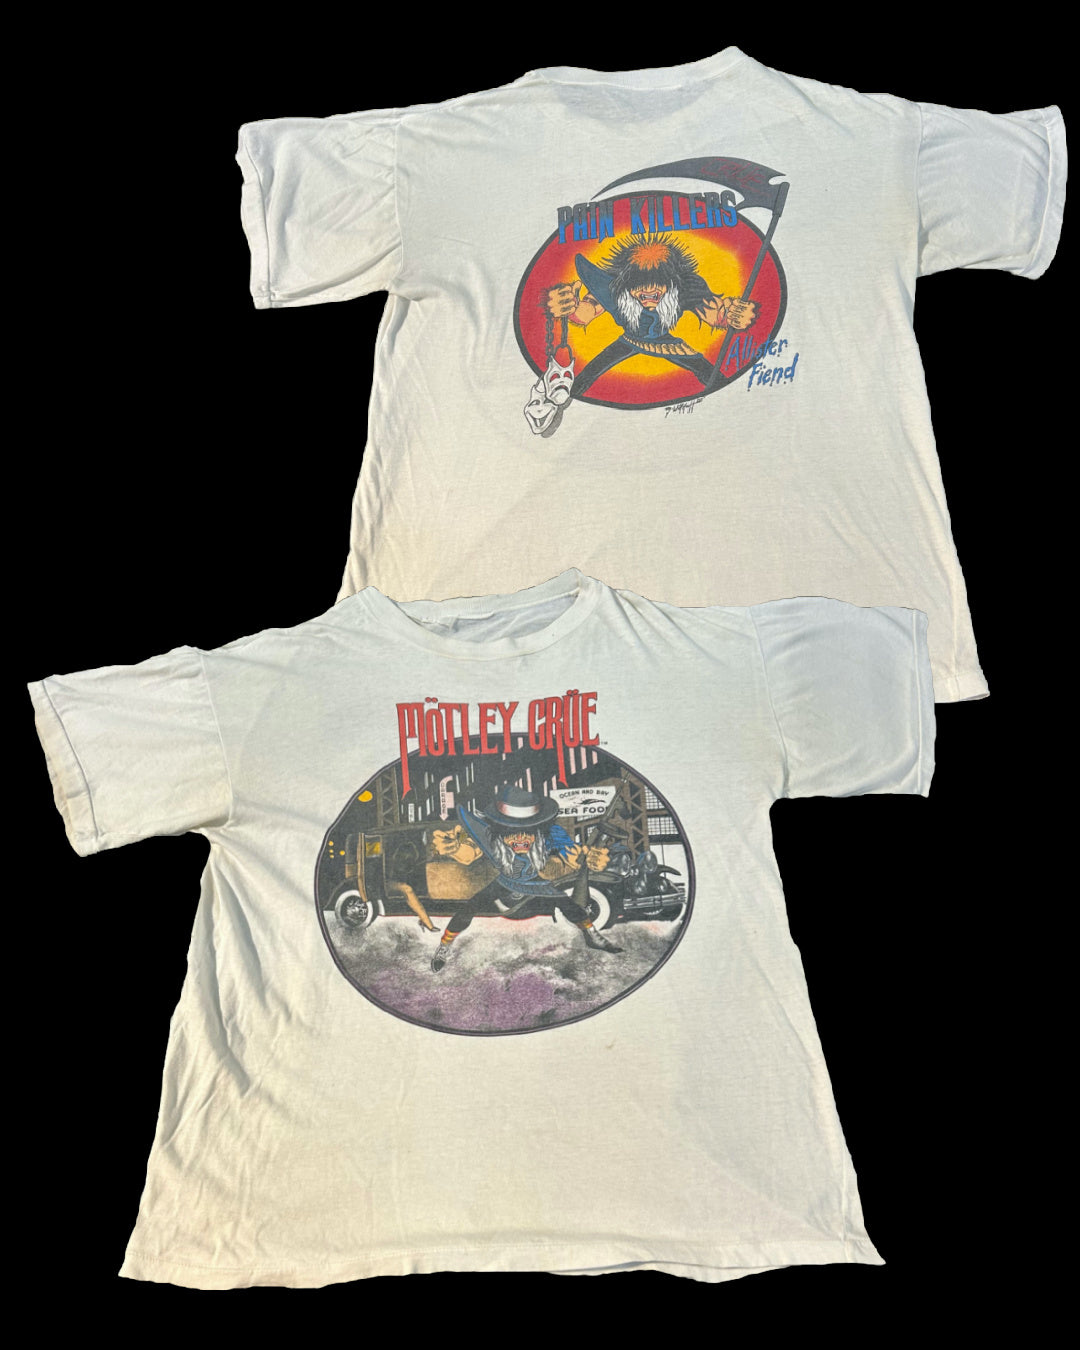 Motley Crue 1985 Painkillers concert tee